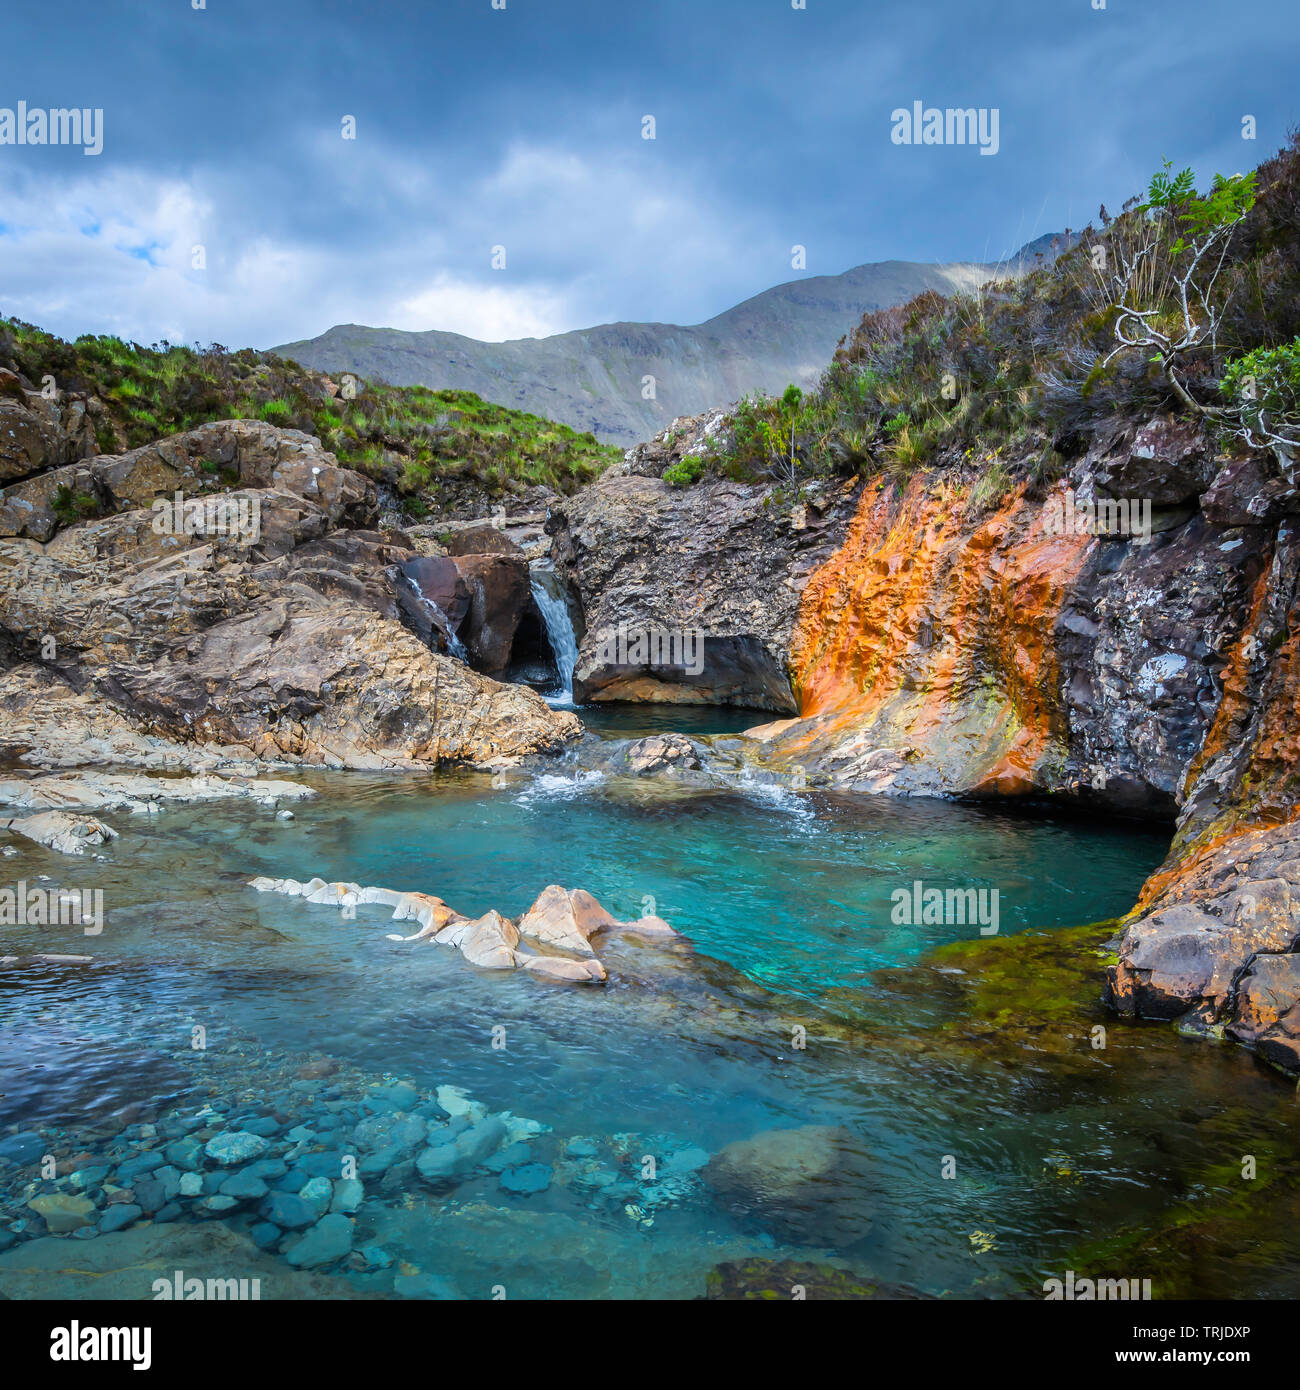 Hermosos paisajes, la Isla de Skye, Escocia.Fairy, piscinas con agua de color turquesa, cascadas y colorido paisaje de rocas.etéreo, la belleza de la naturaleza. Foto de stock